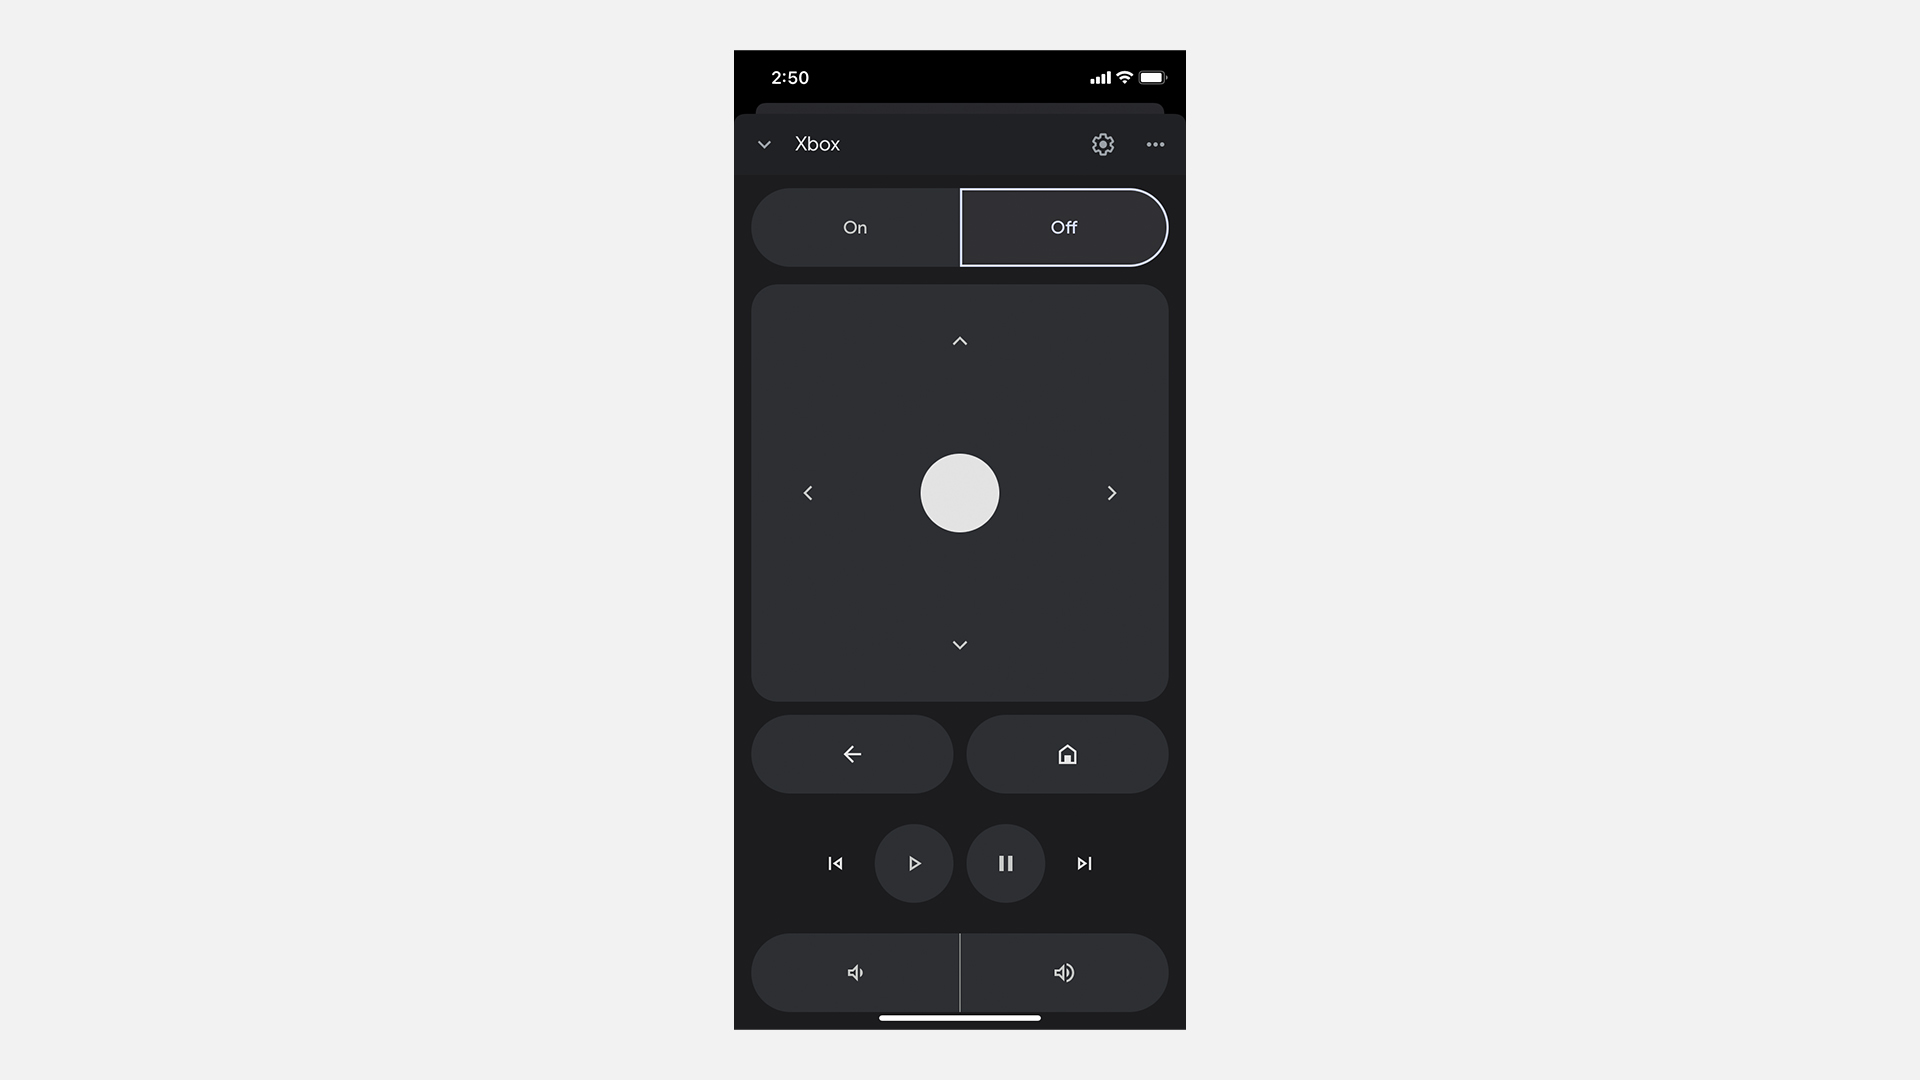 Screenshot of Google Home app remote control.